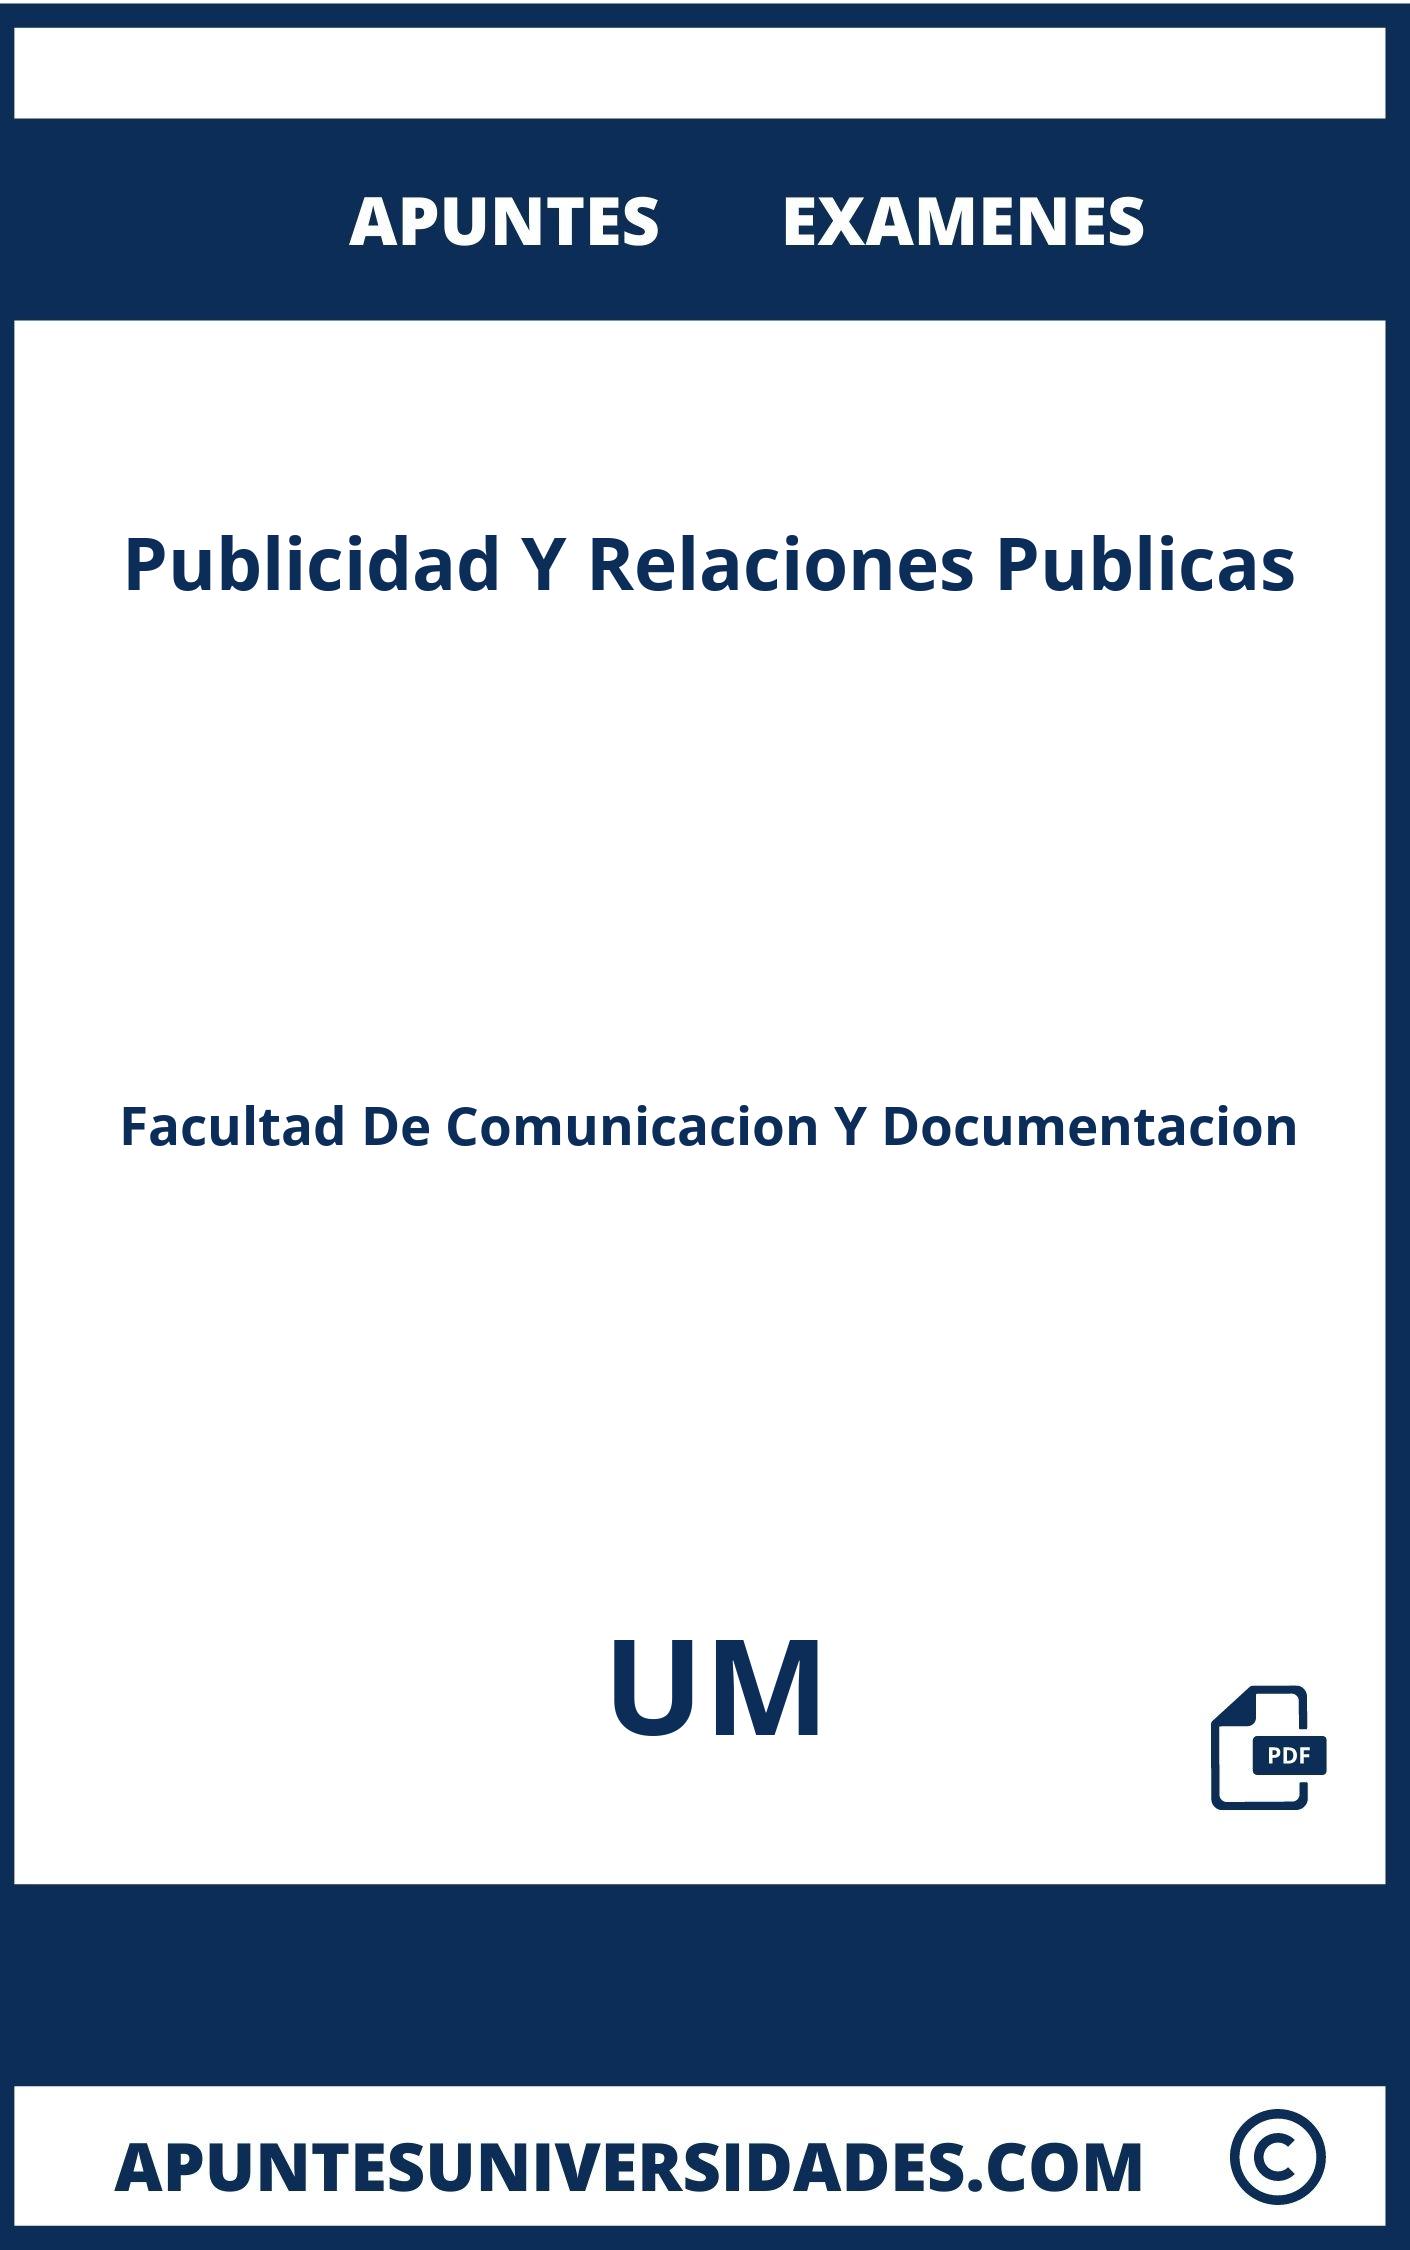 Publicidad Y Relaciones Publicas UM Examenes Apuntes